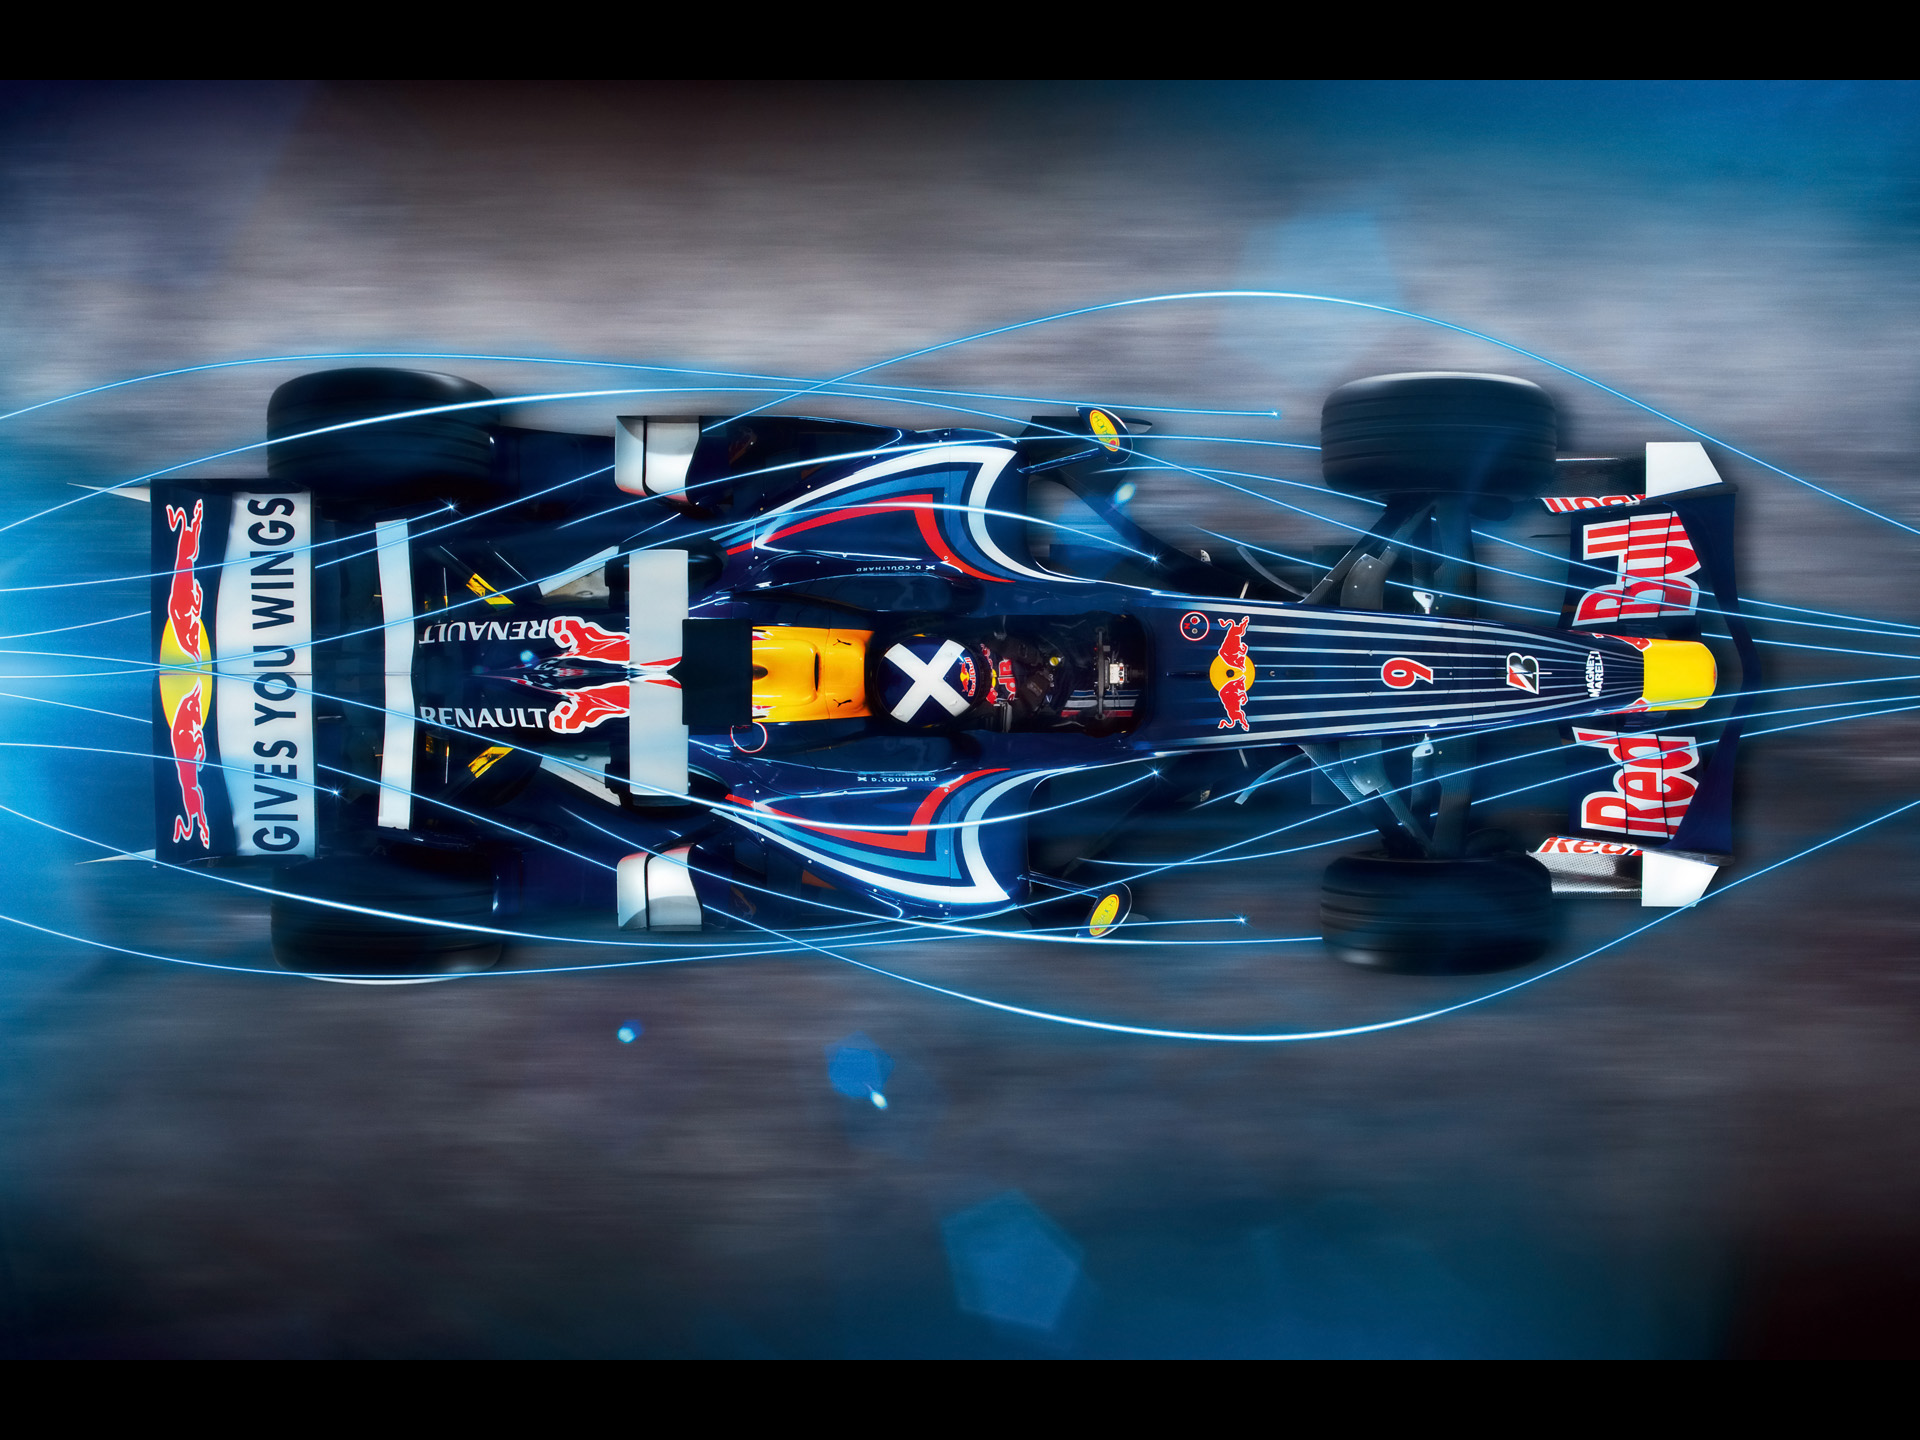 Red Bull RB4. MotoBurg